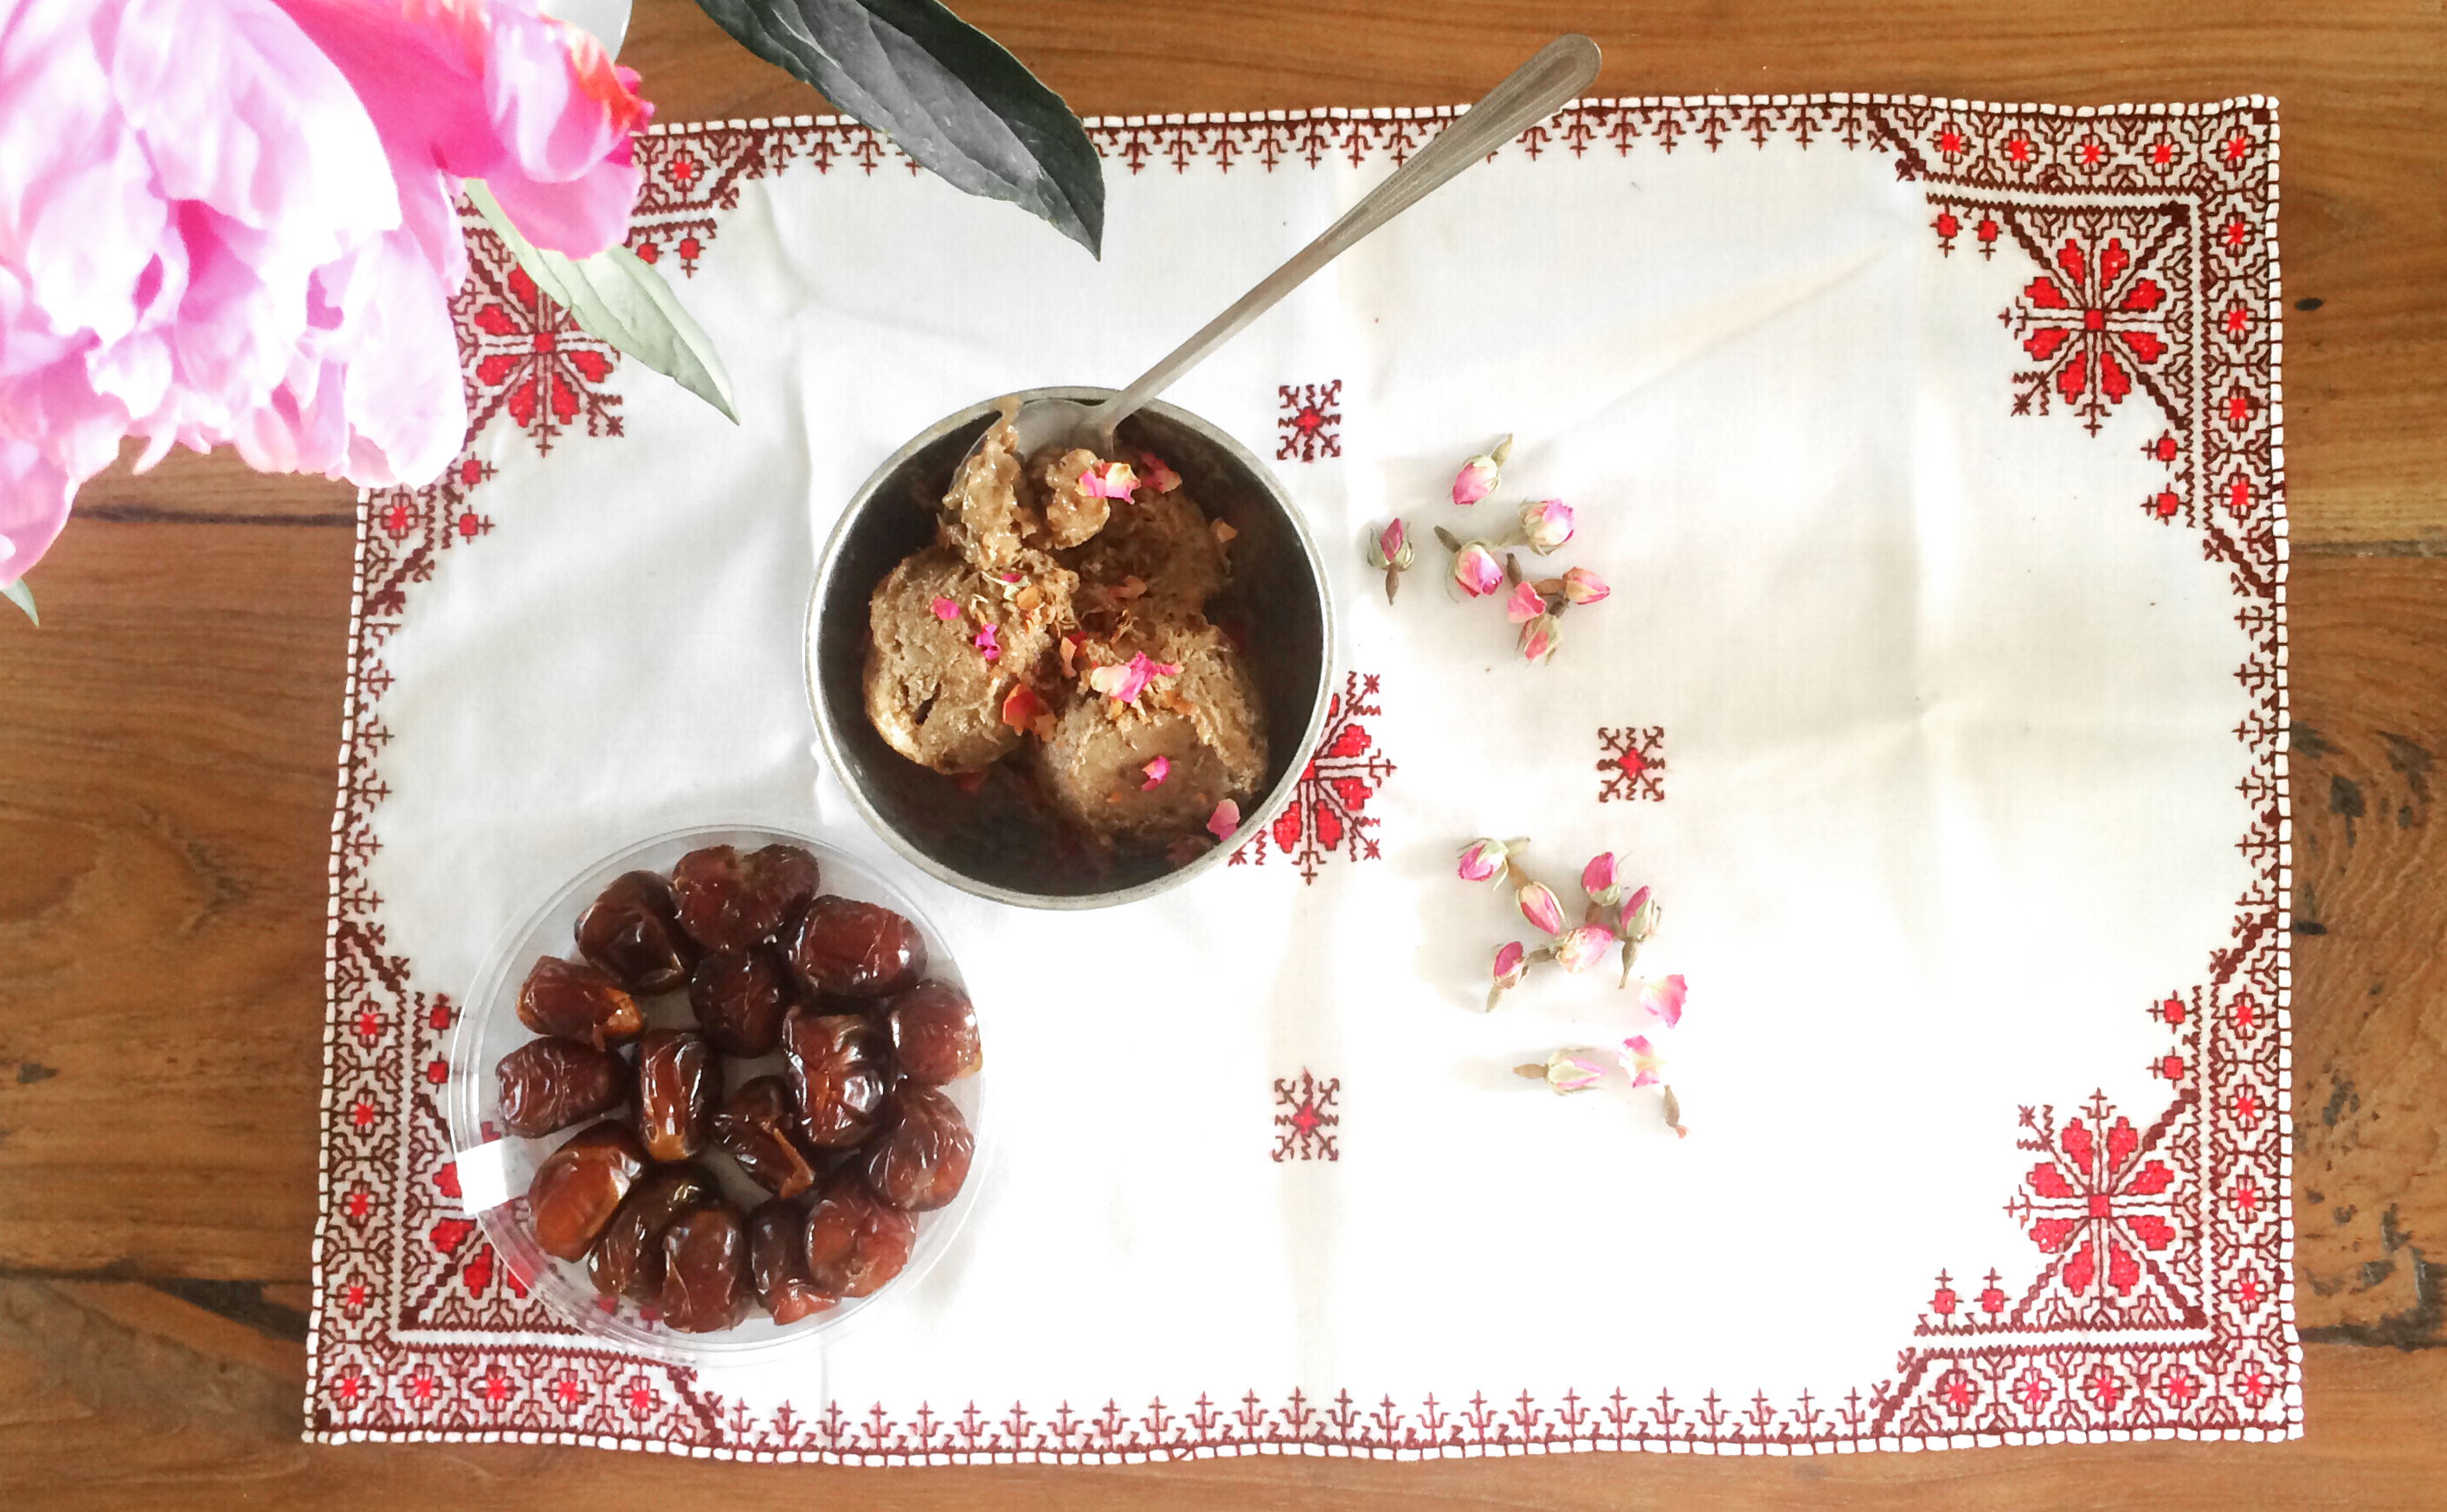 A la minute kokos-dadelijs met Arabische koffie en rozenwater